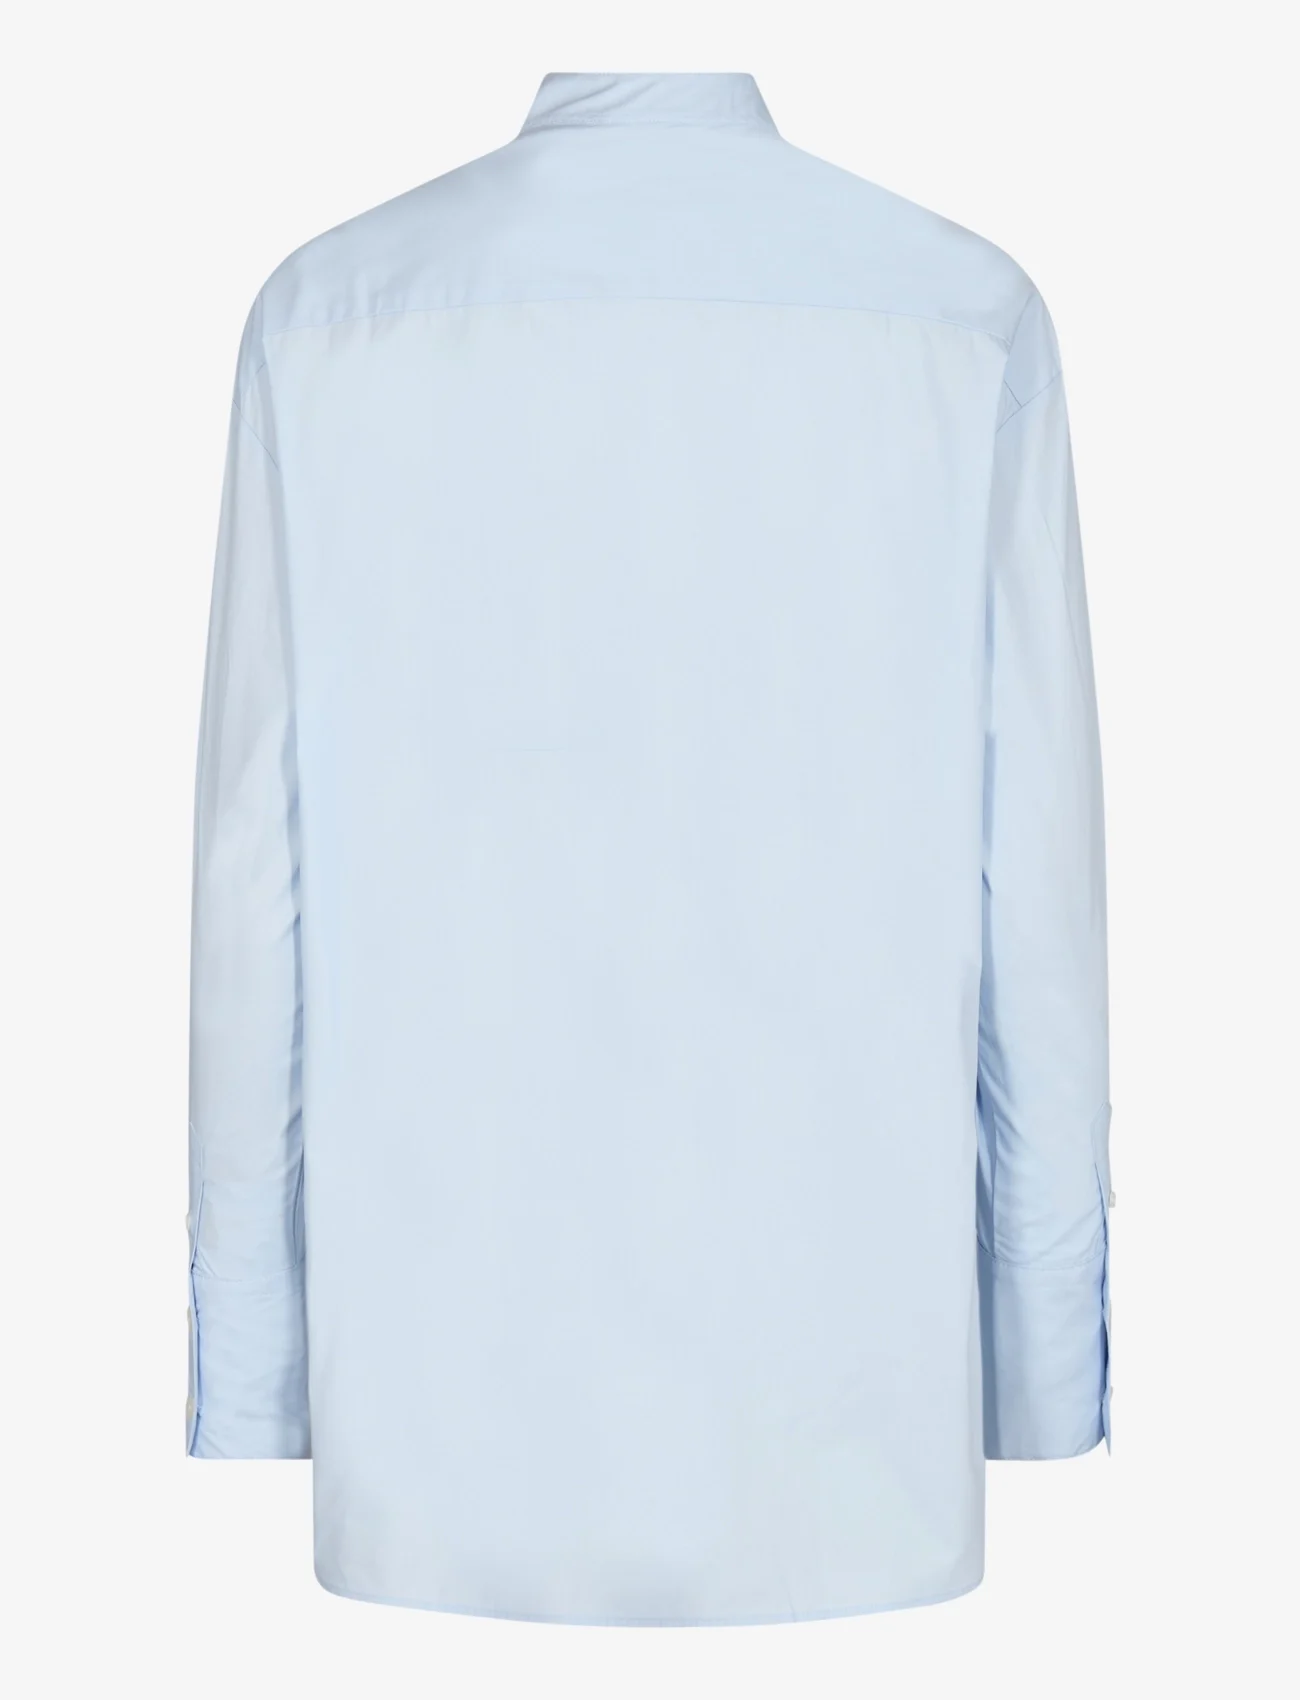 Bruun & Stengade - BS Bernadette Regular Fit Shirt - langärmlige hemden - light blue - 1